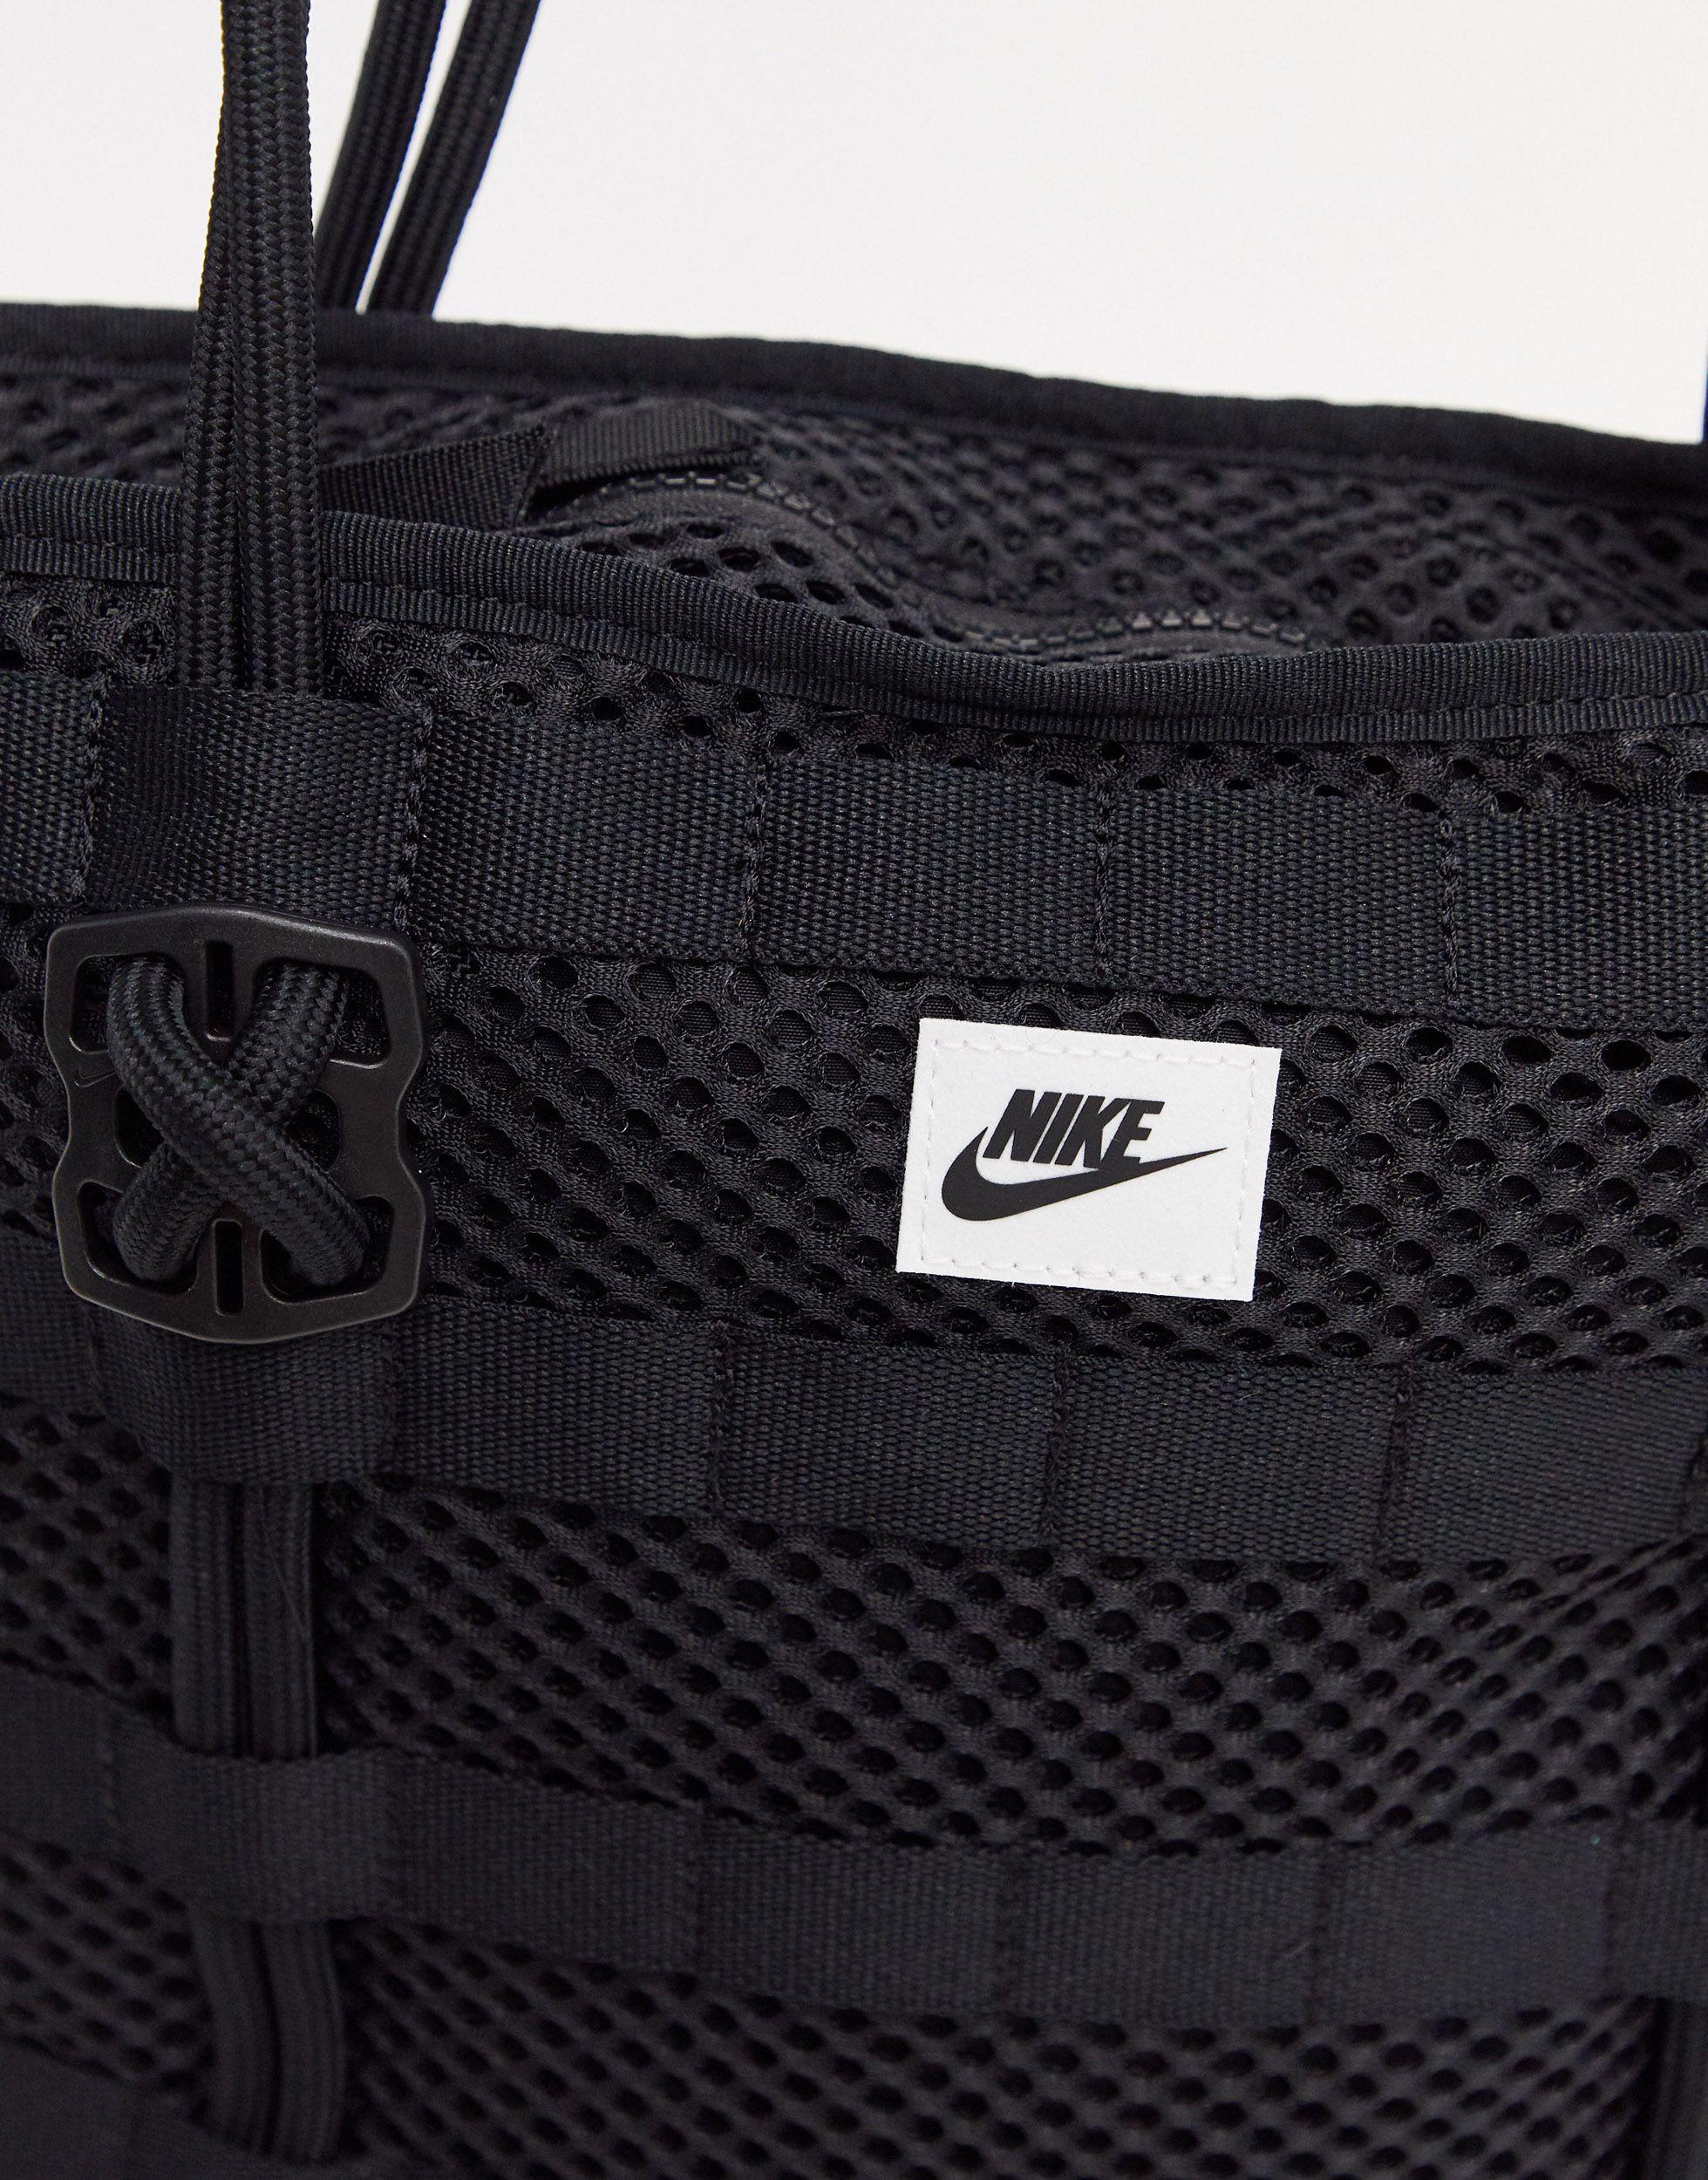 Buy Nike Women's Air Small Tote Bag at